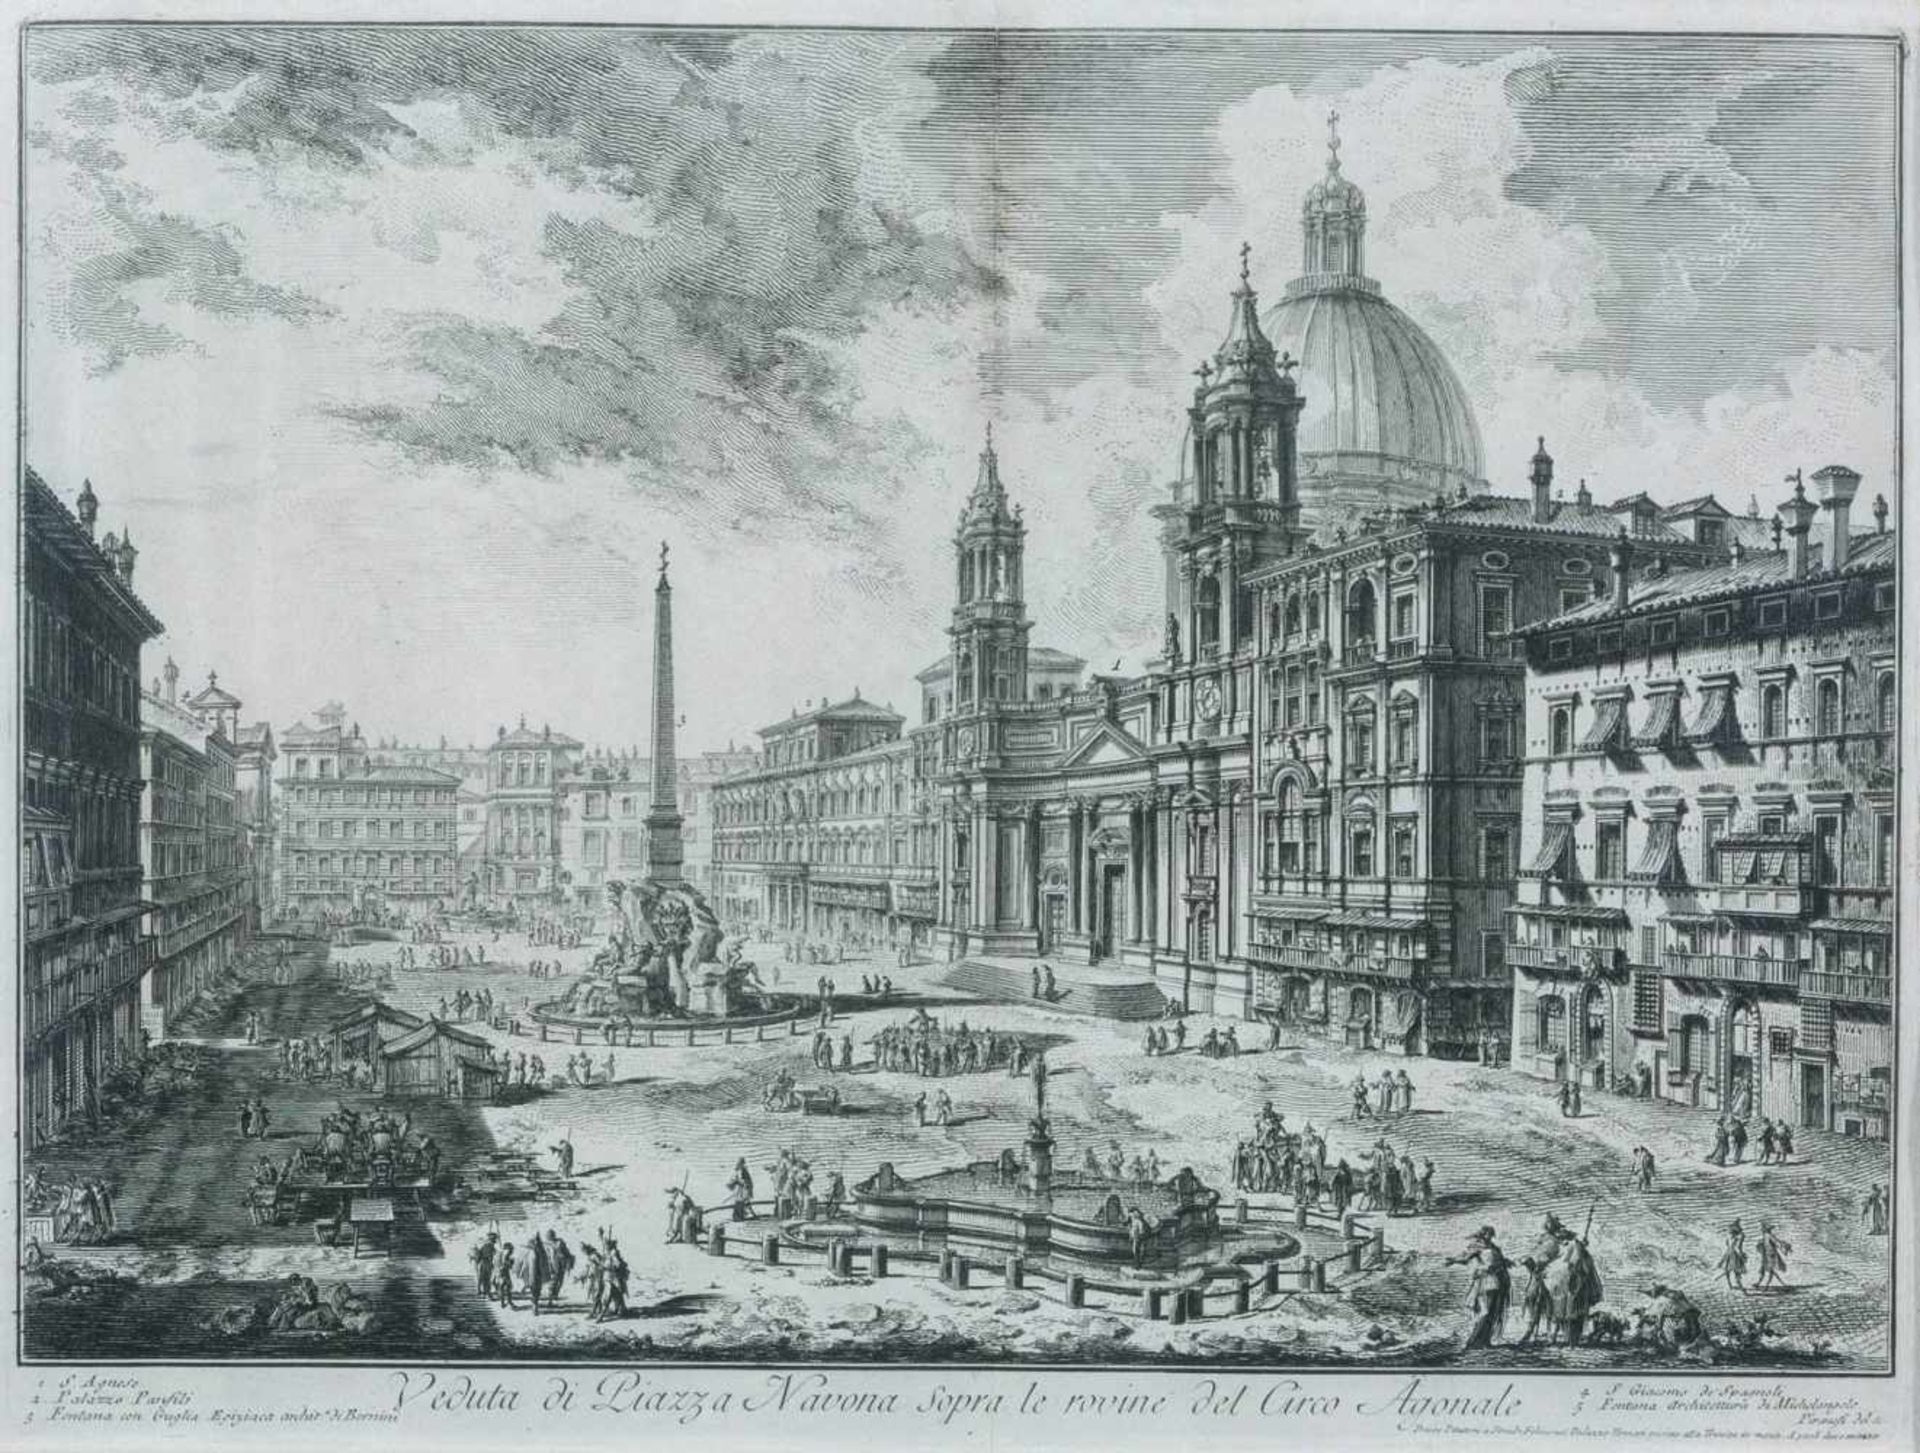 Piranesi, Giovanni Battista (Mogliano, Rom 1720-1778) Veduta di Piazza Navona sopra le rovine del